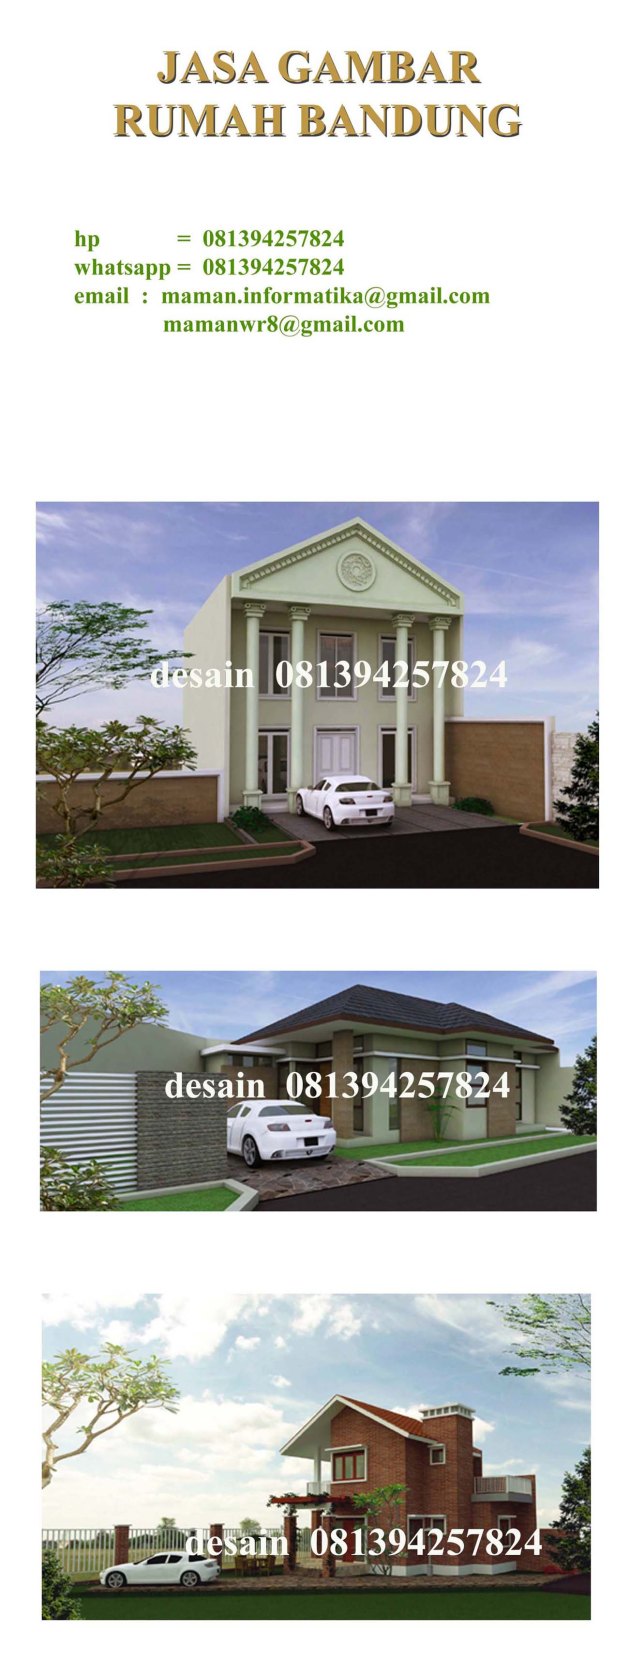 Jasa Desain Rumah Bandung Rp 9000 M2 Jasa Desain Les